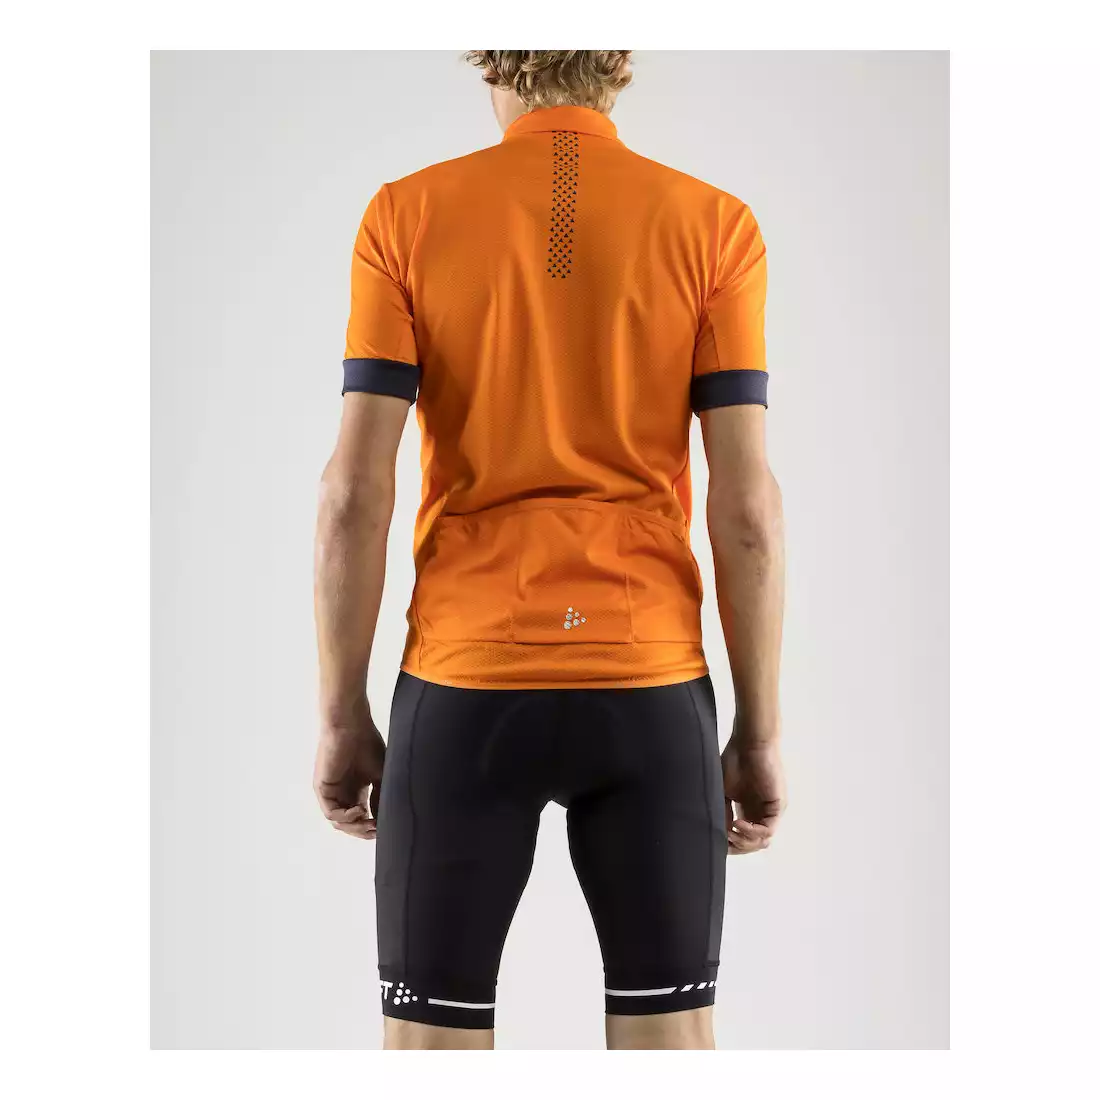 CRAFT RISE męska koszulka rowerowa pomarańczowa 1906097-575947